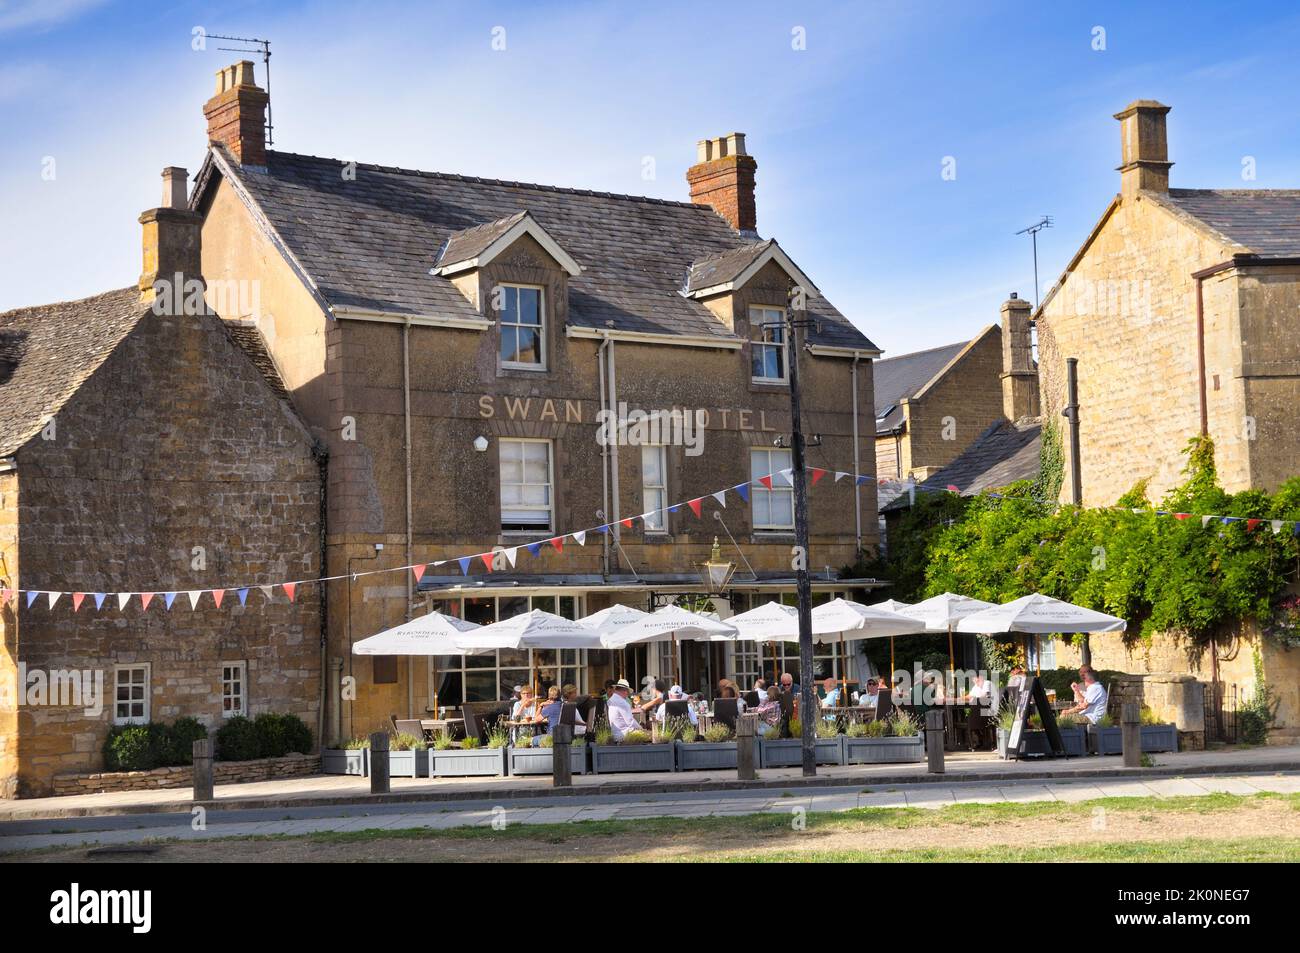 The Swan, un pub et restaurant moderne populaire dans le pittoresque village Cotswold de Broadway, Cotswolds, Worcestershire, Angleterre, Royaume-Uni Banque D'Images